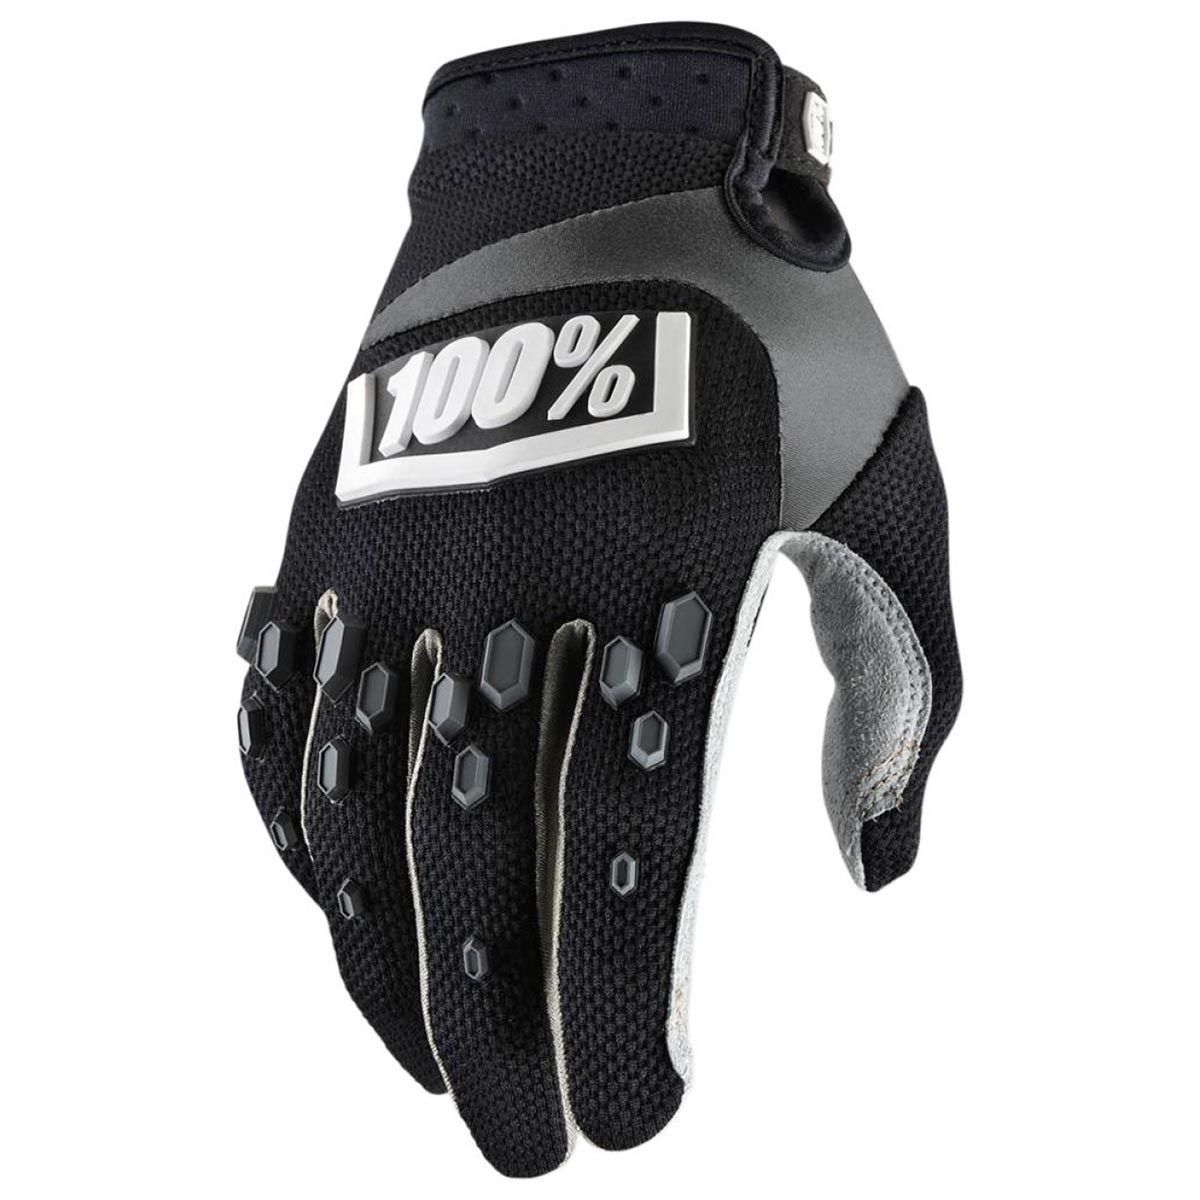 100% Bike Gloves Airmatic Black